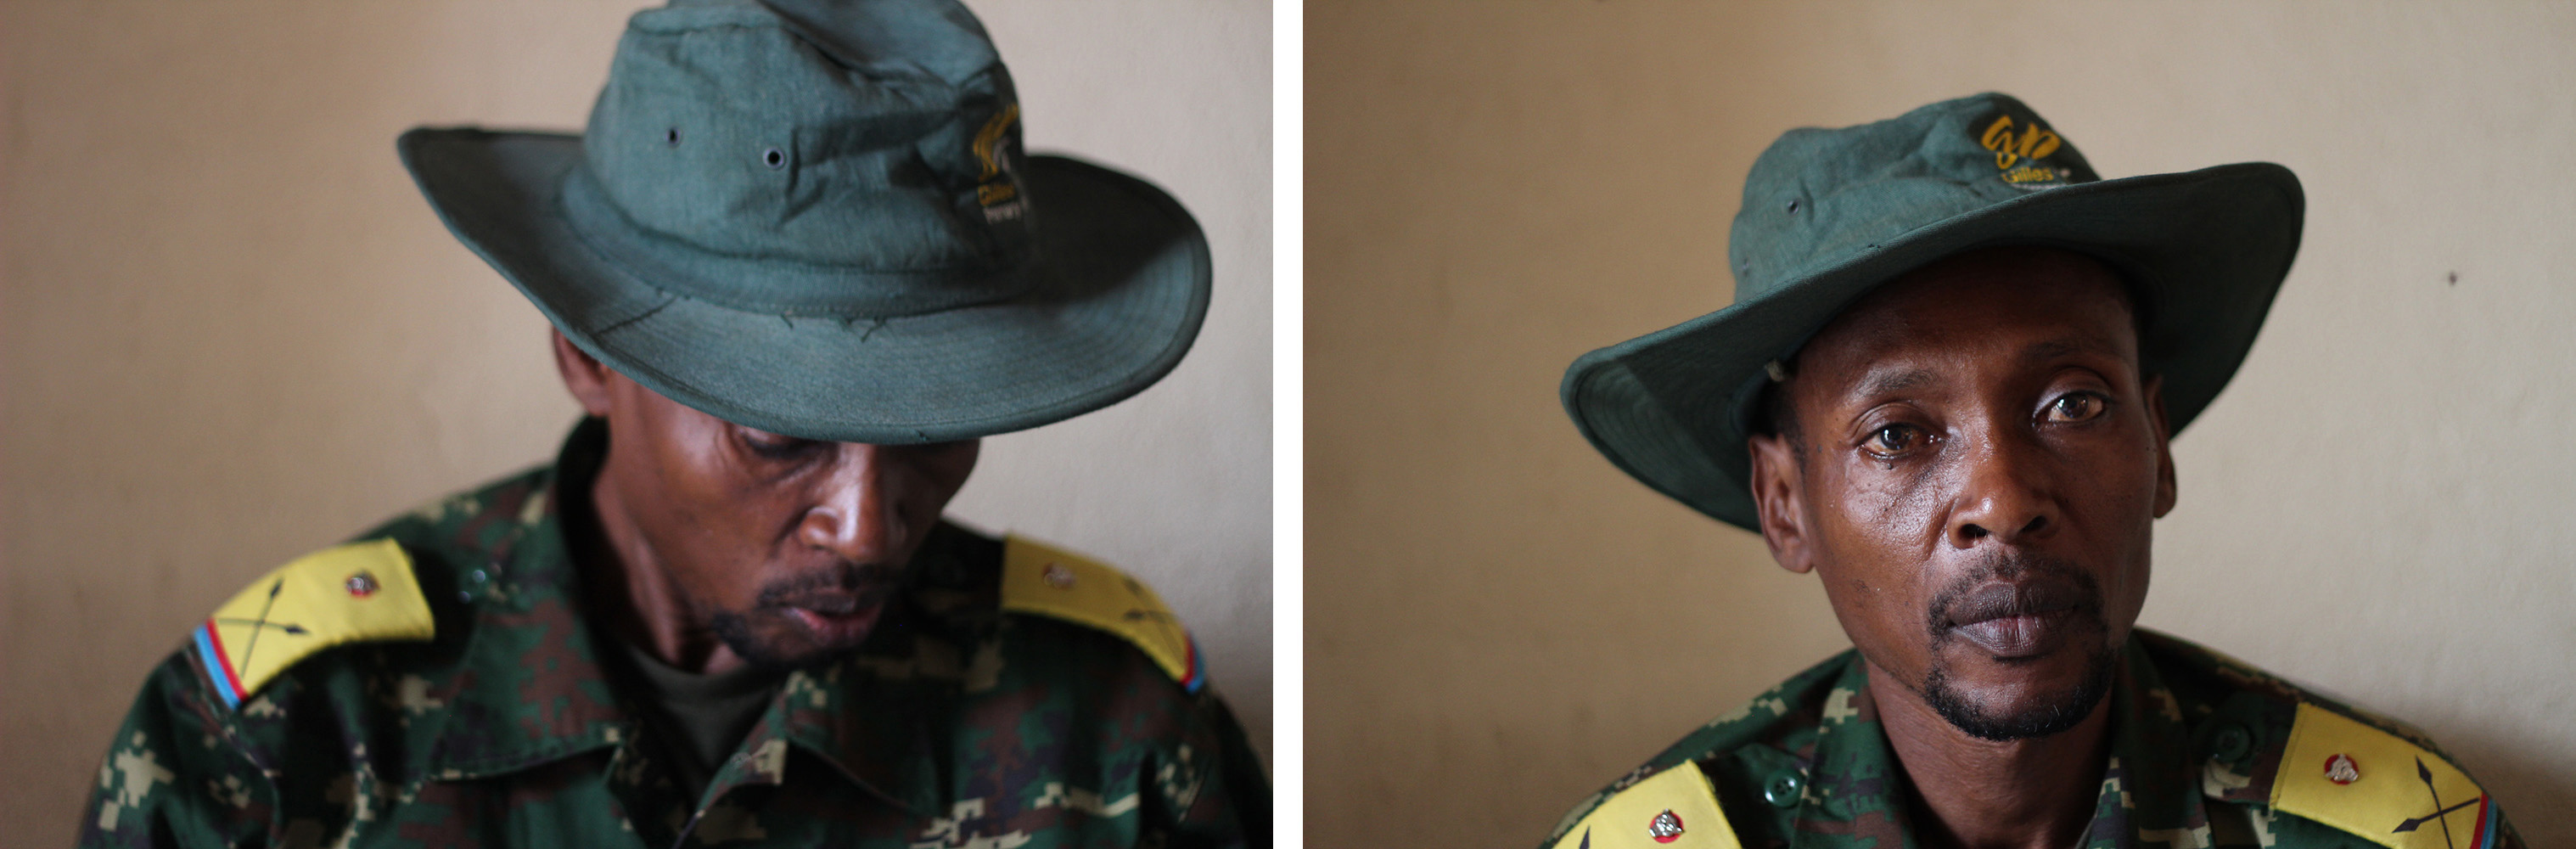 El portavoz del M23 Willy Ngoma posa para un retrato en su oficina en Bunagana, Congo, el 23 de junio.